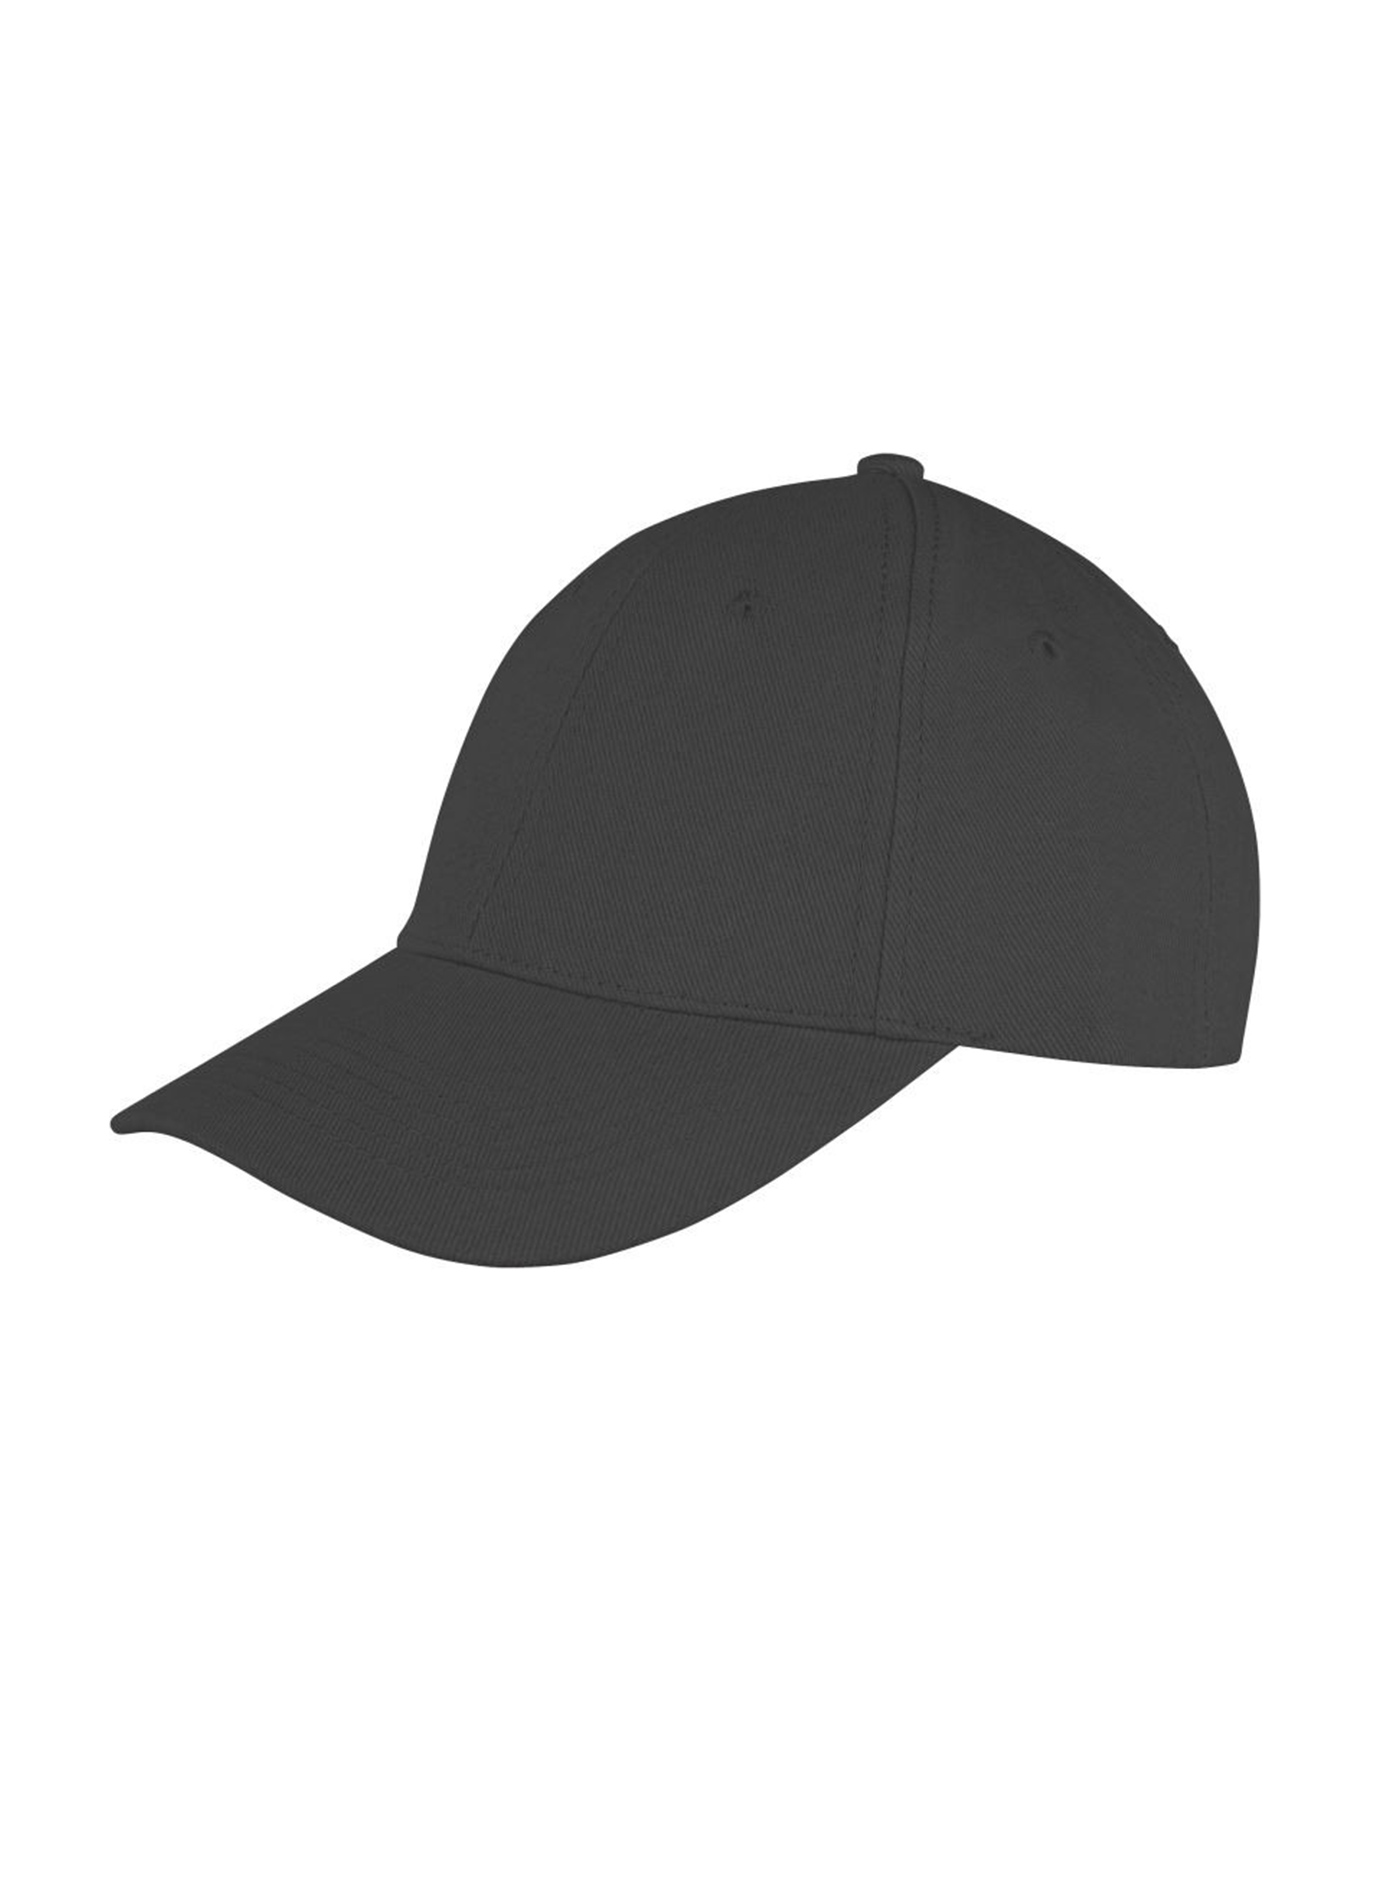 Kšiltovka Result headwear s nízkým profilem - Černá univerzal